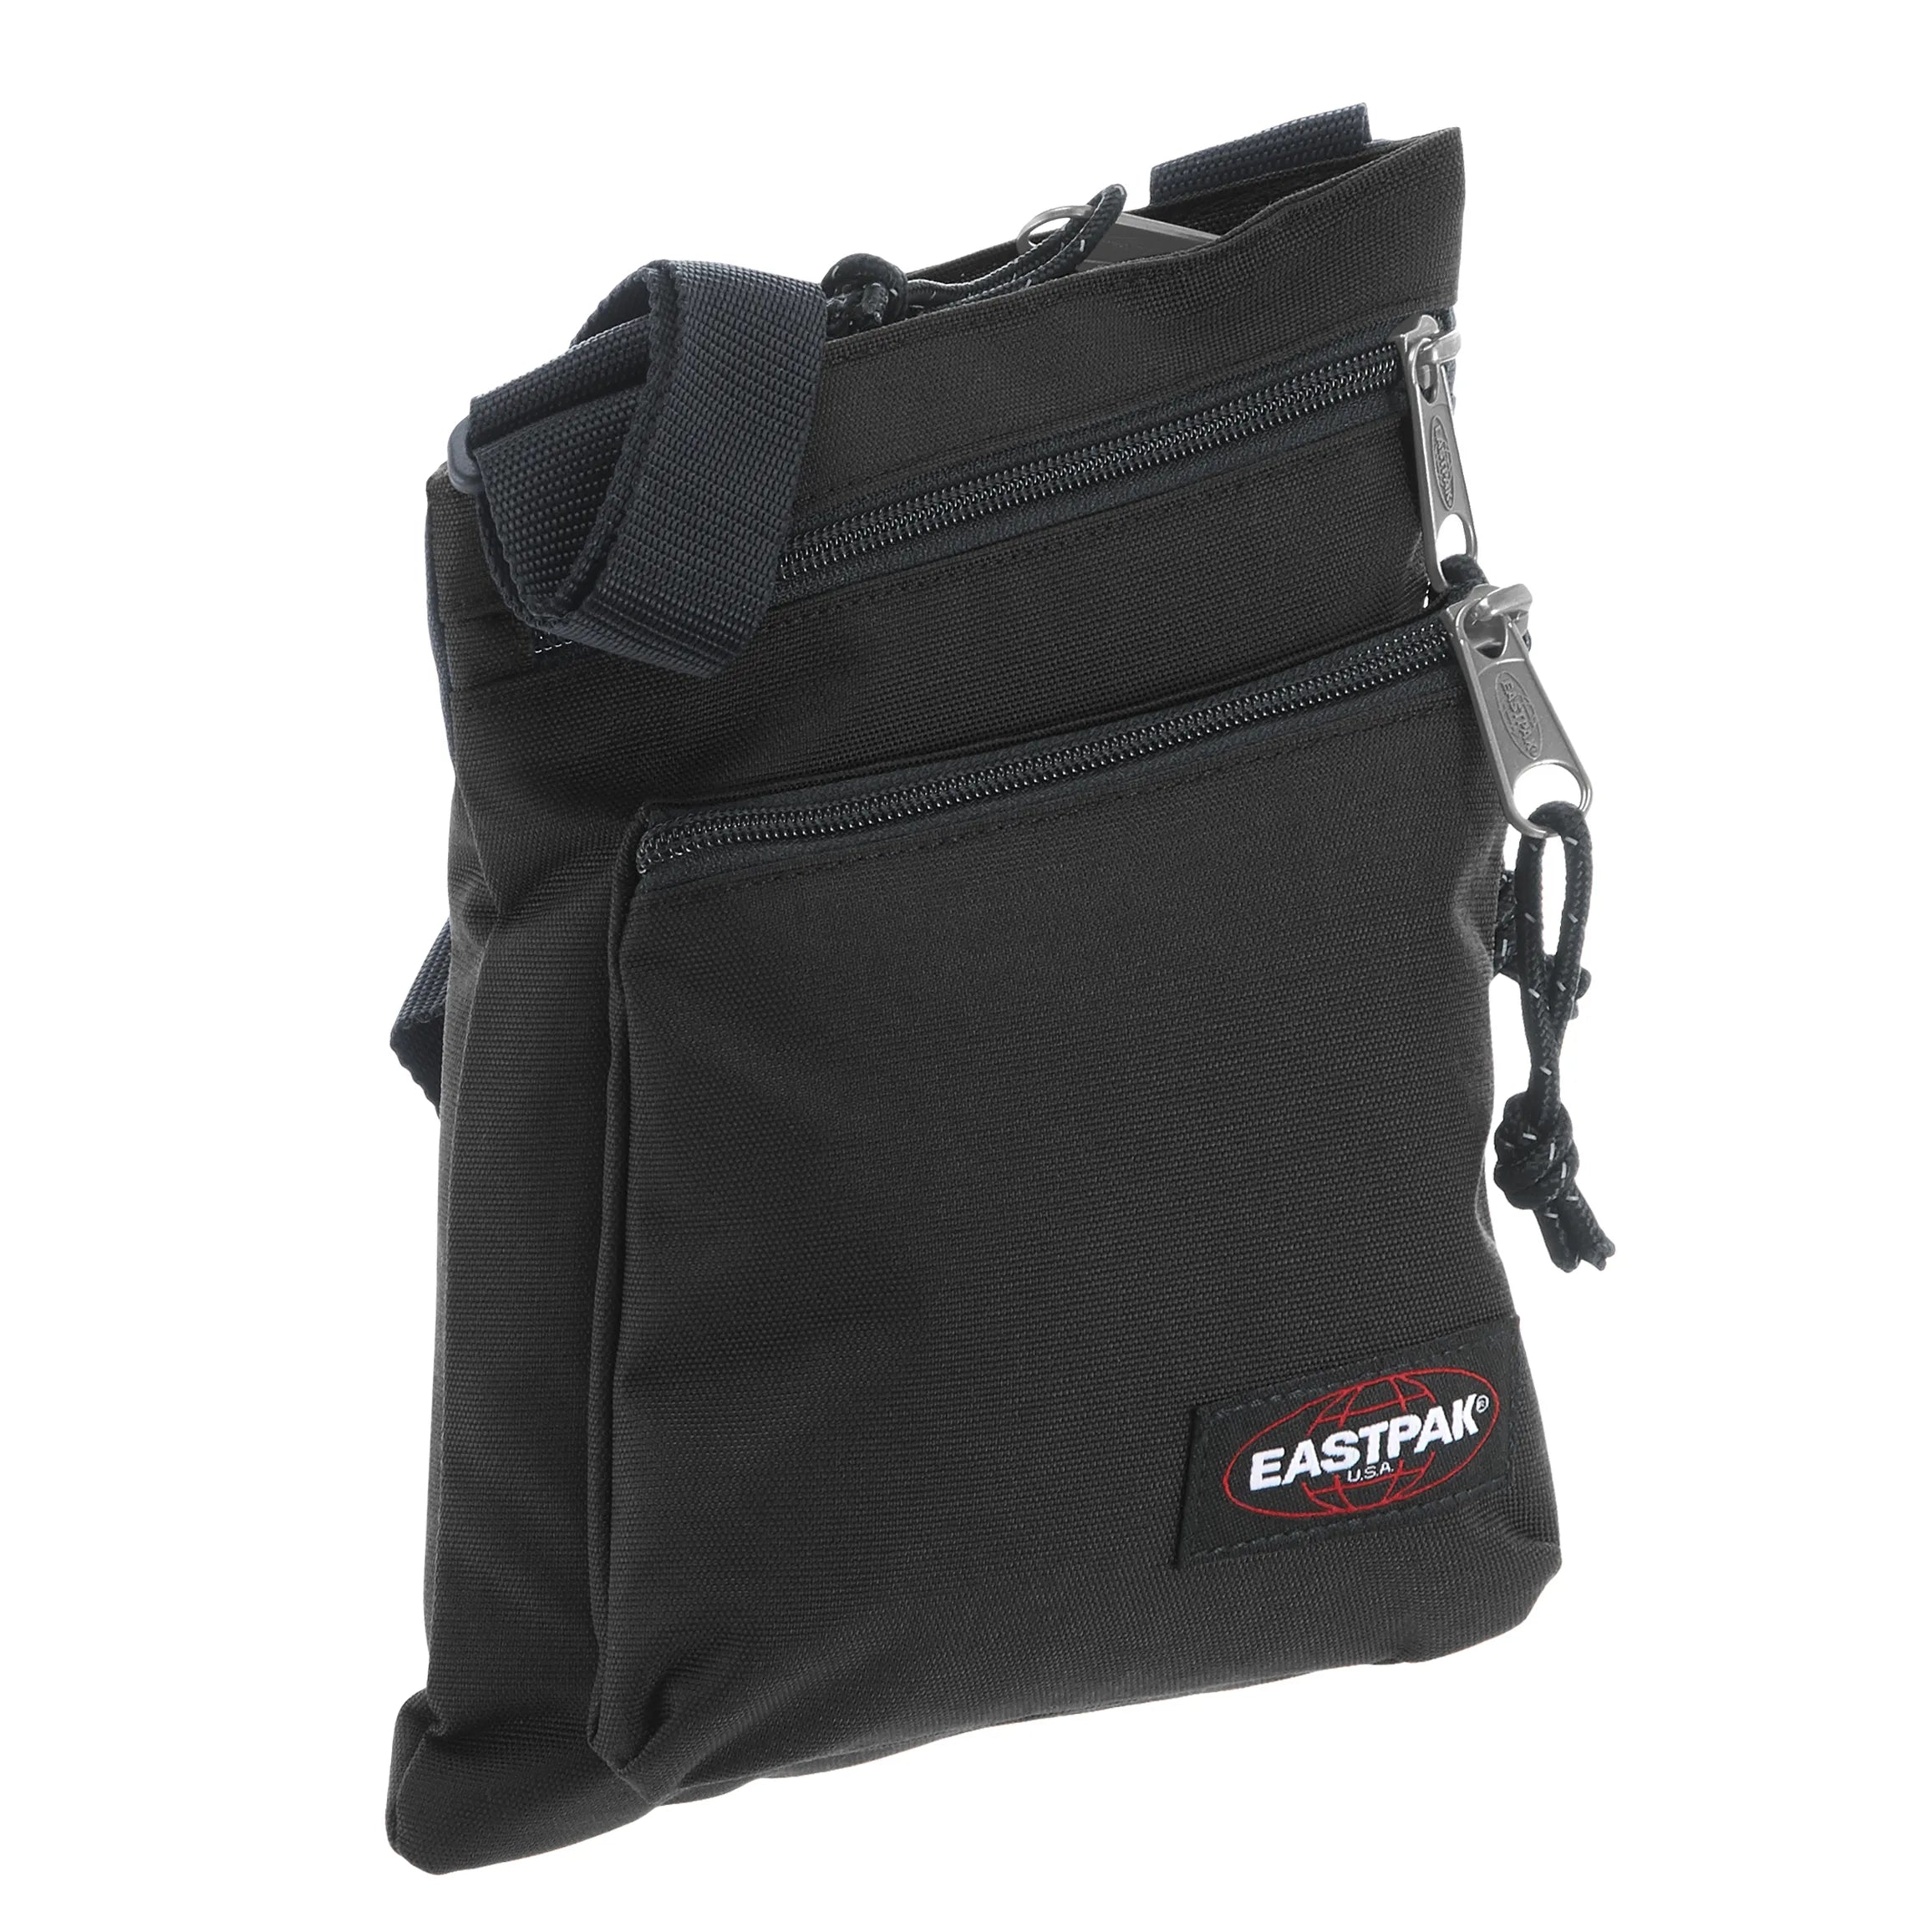 Eastpak Authentic Rusher shoulder bag 23 cm - black